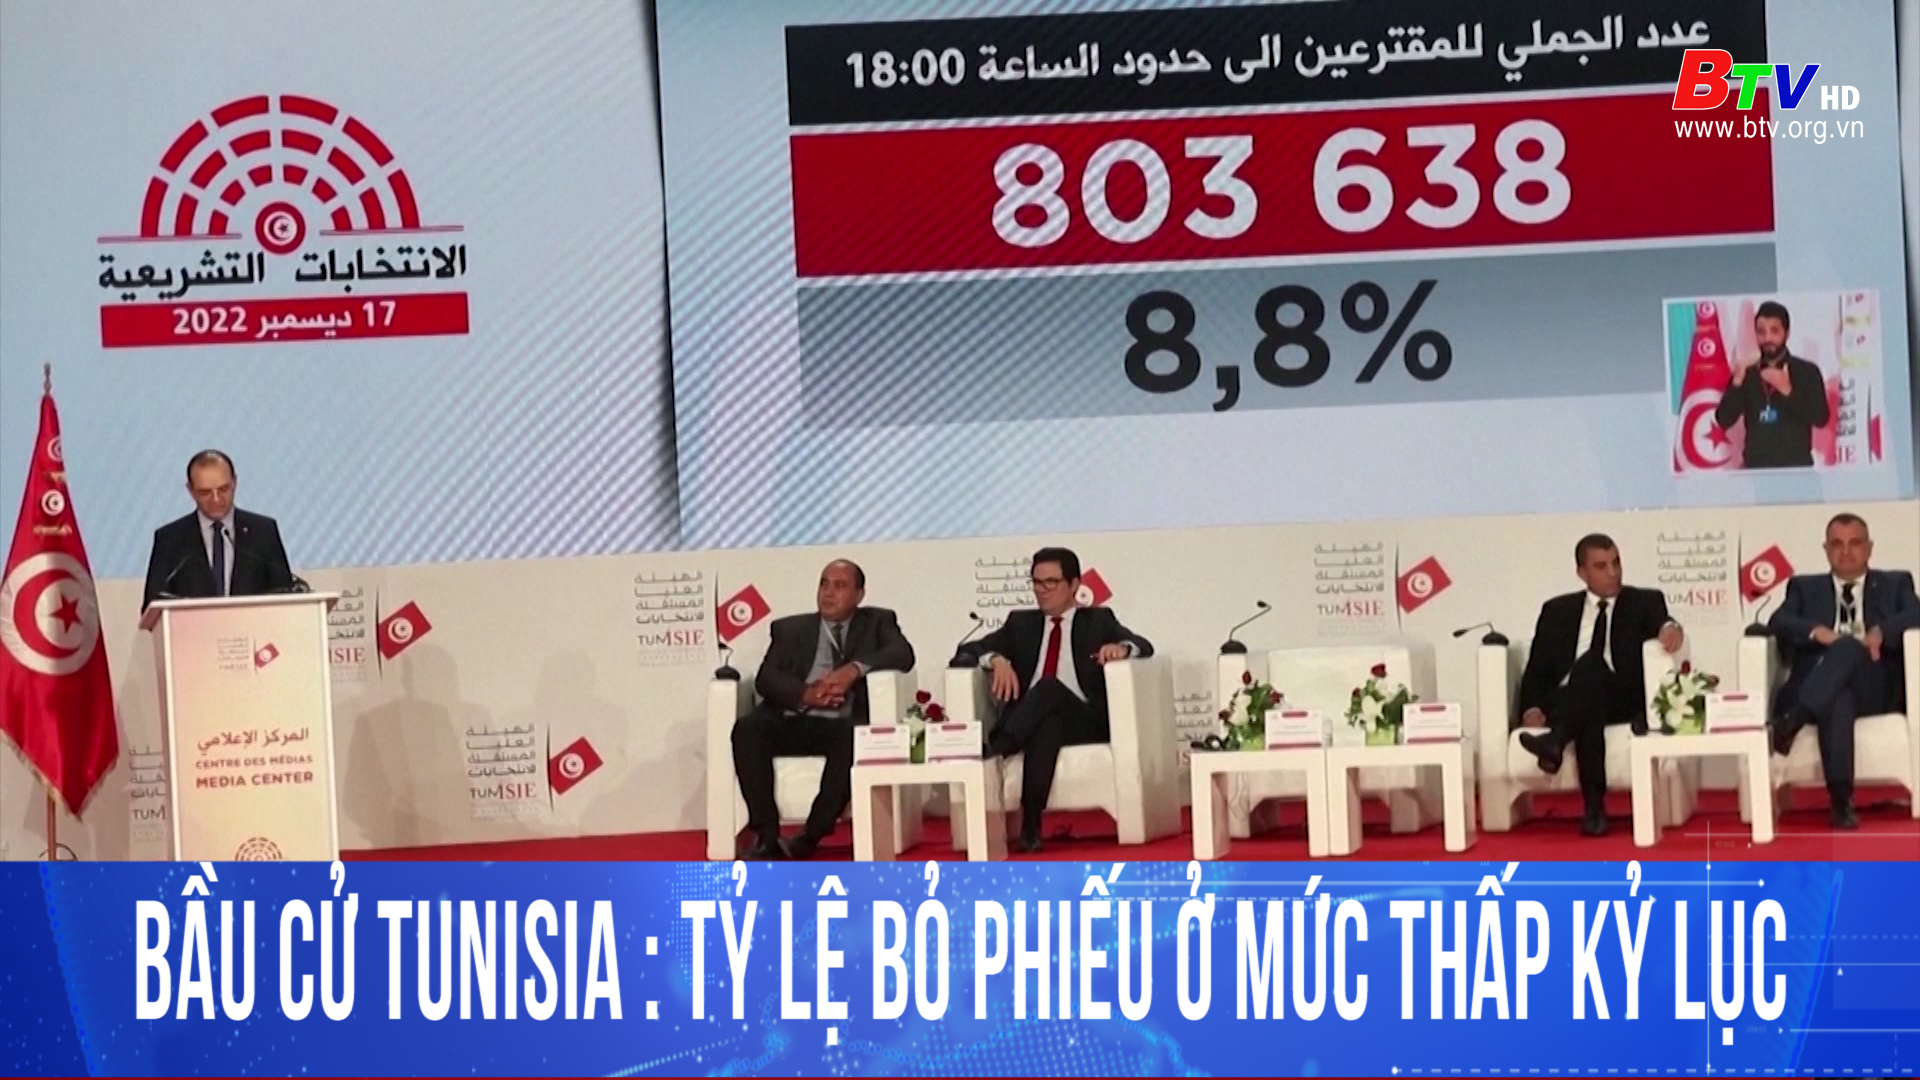 Bầu cử Tunisia: tỷ lệ bỏ phiếu ở mức thấp kỷ lục	